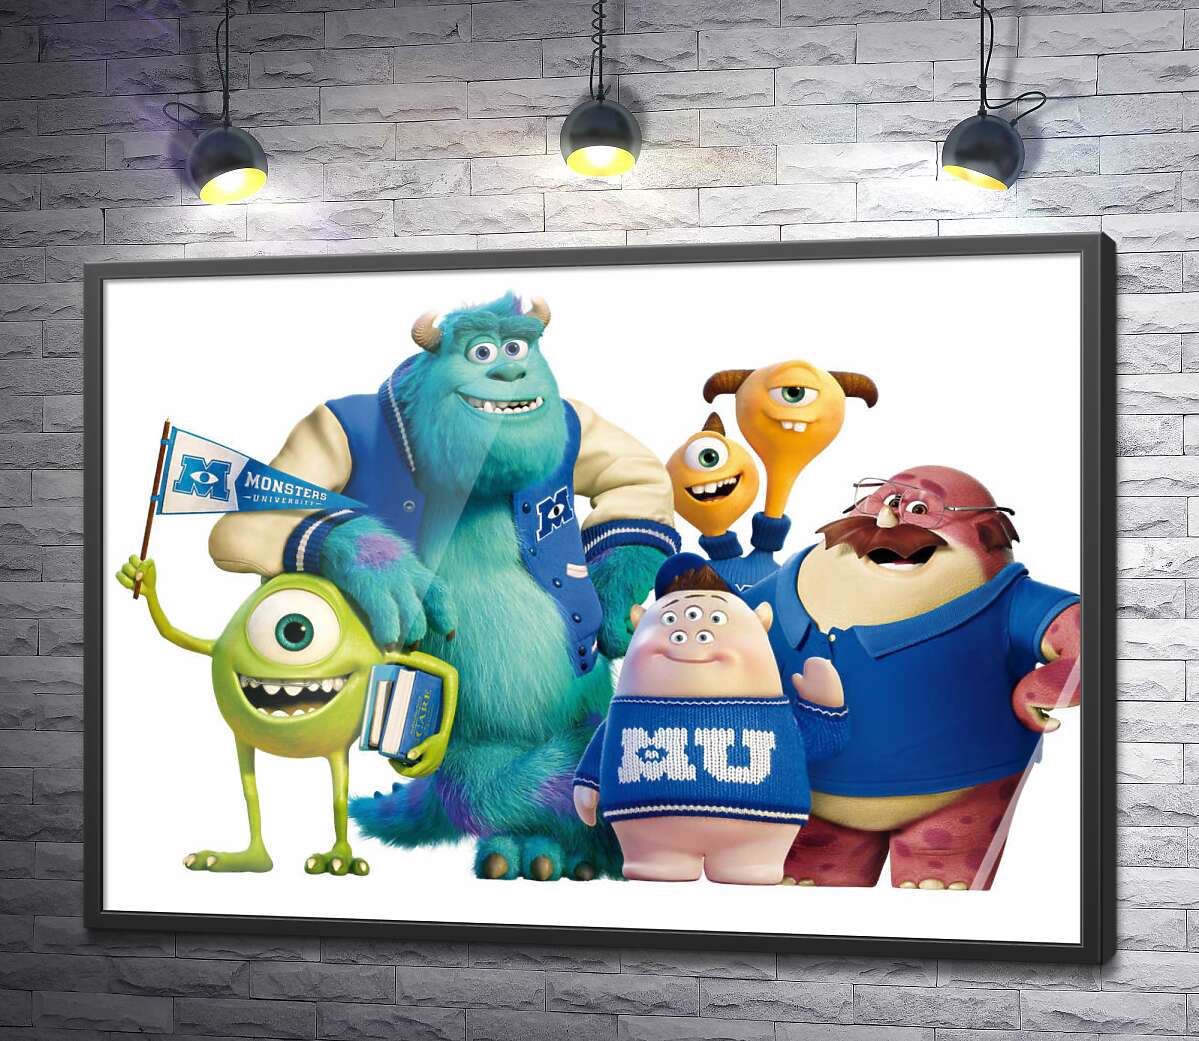 постер Яркие герои мультфильма "Университет монстров" (Monsters University) весело улыбаются